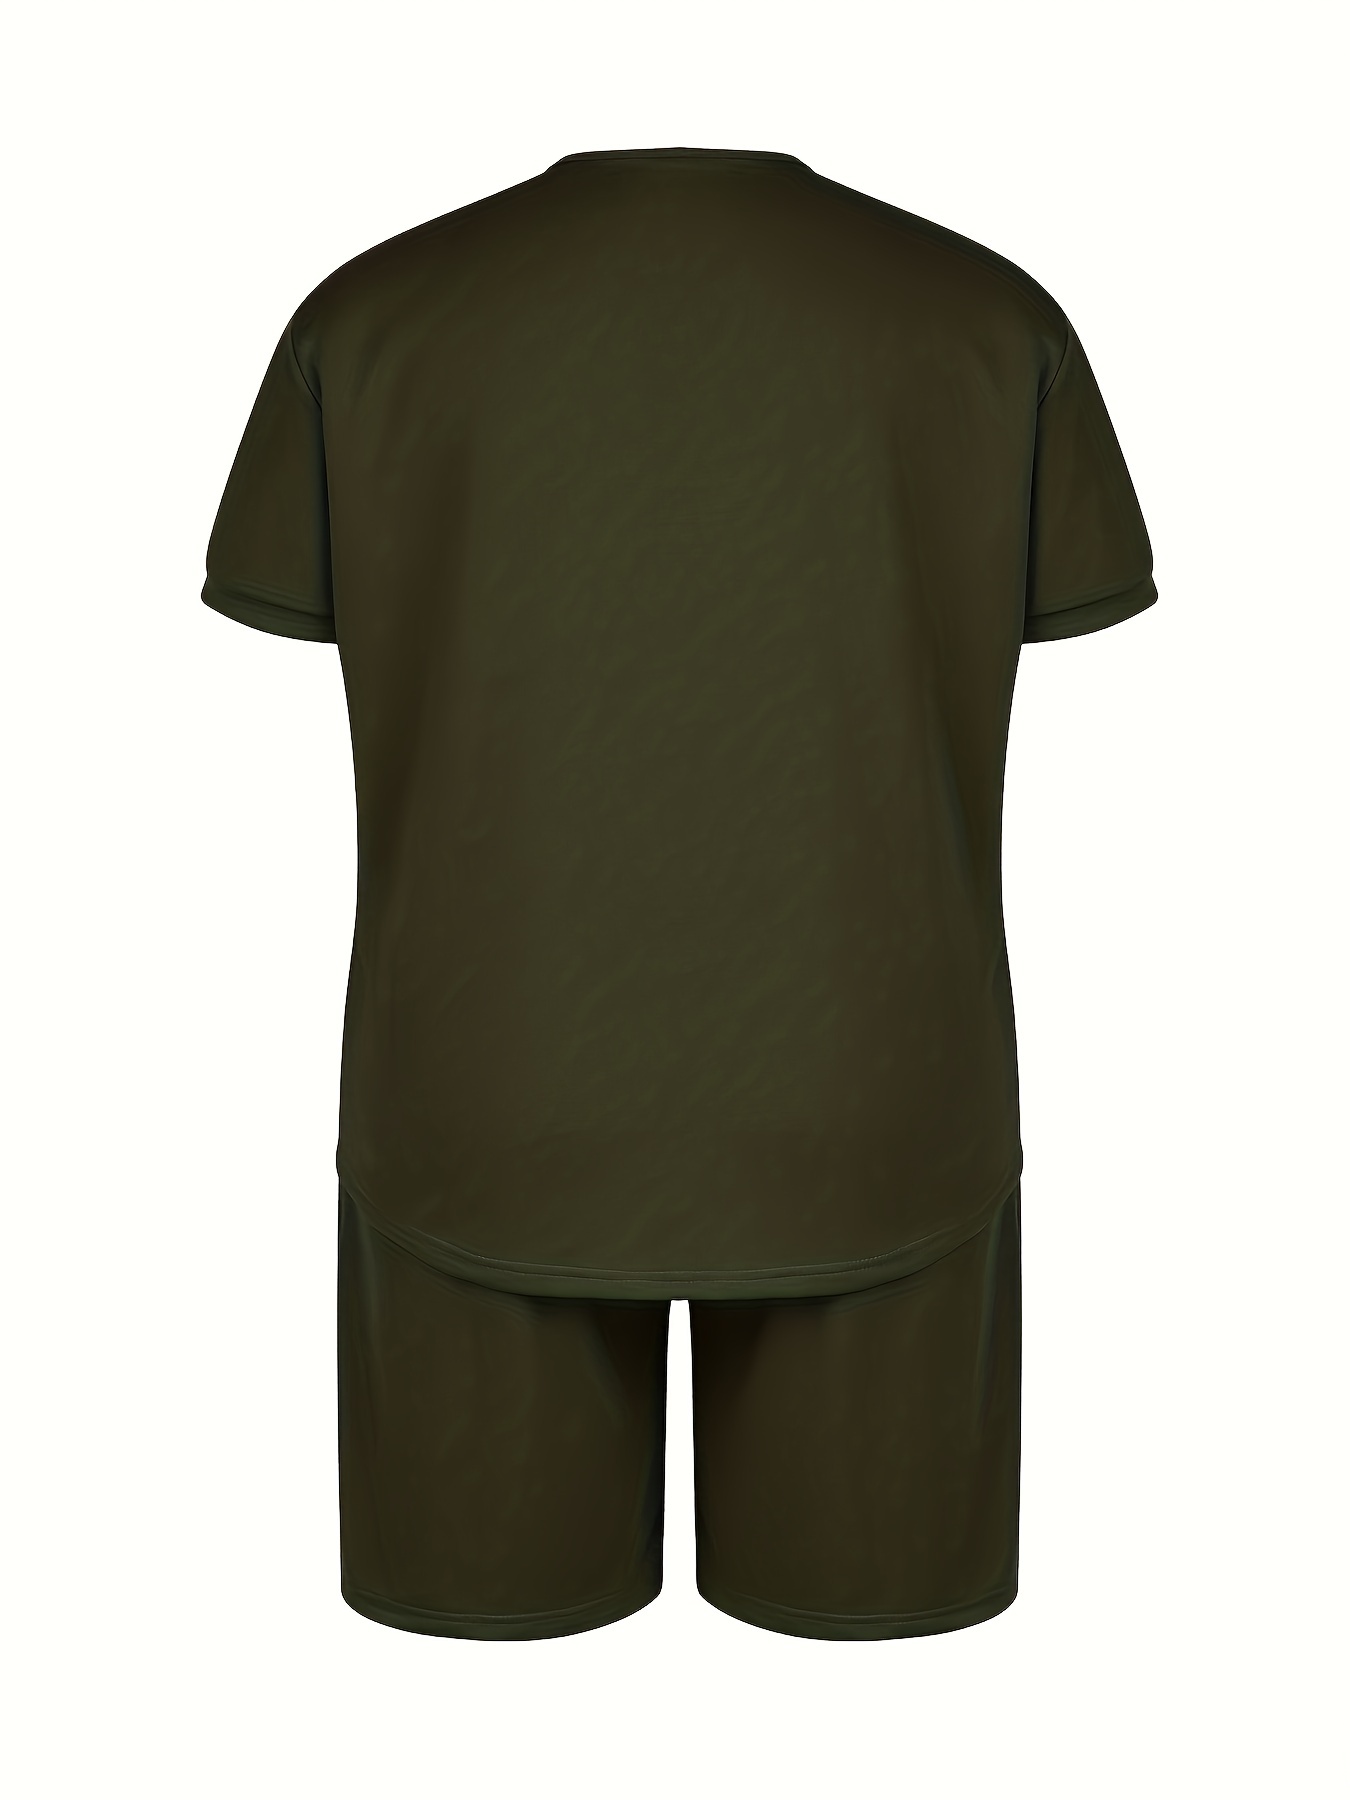 Latuza Men's Short Sleeves and Shorts Pajama Set S Army Green at   Men's Clothing store